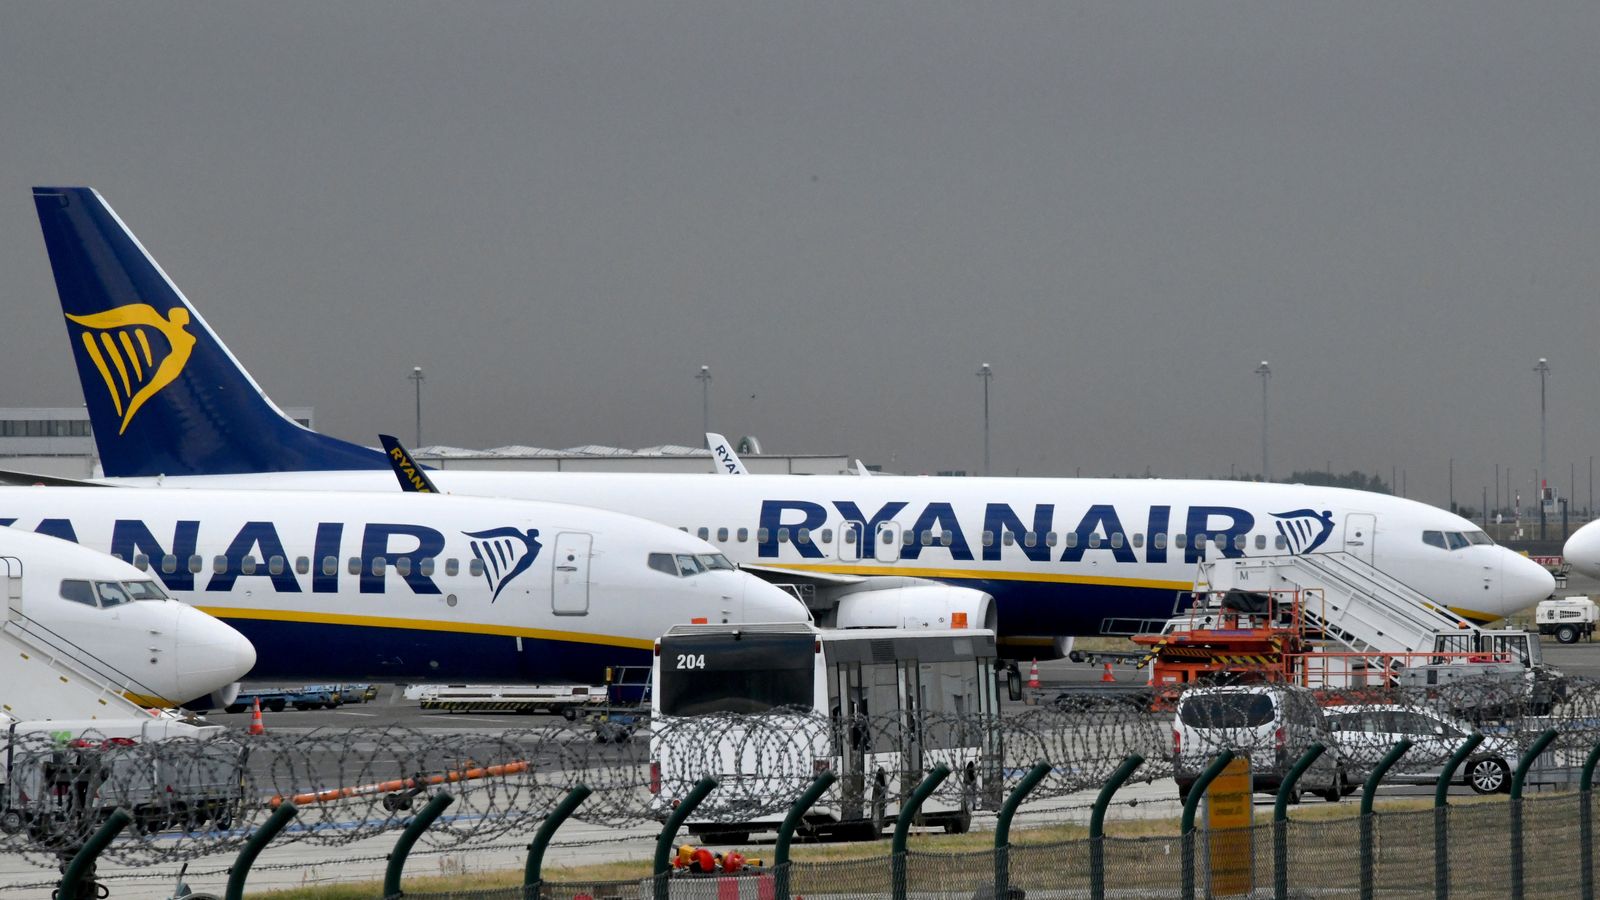 Aéroport de Dublin: urgence déclarée après que l’avion de Ryanair a été blessé à l’atterrissage |  Nouvelles de voyage